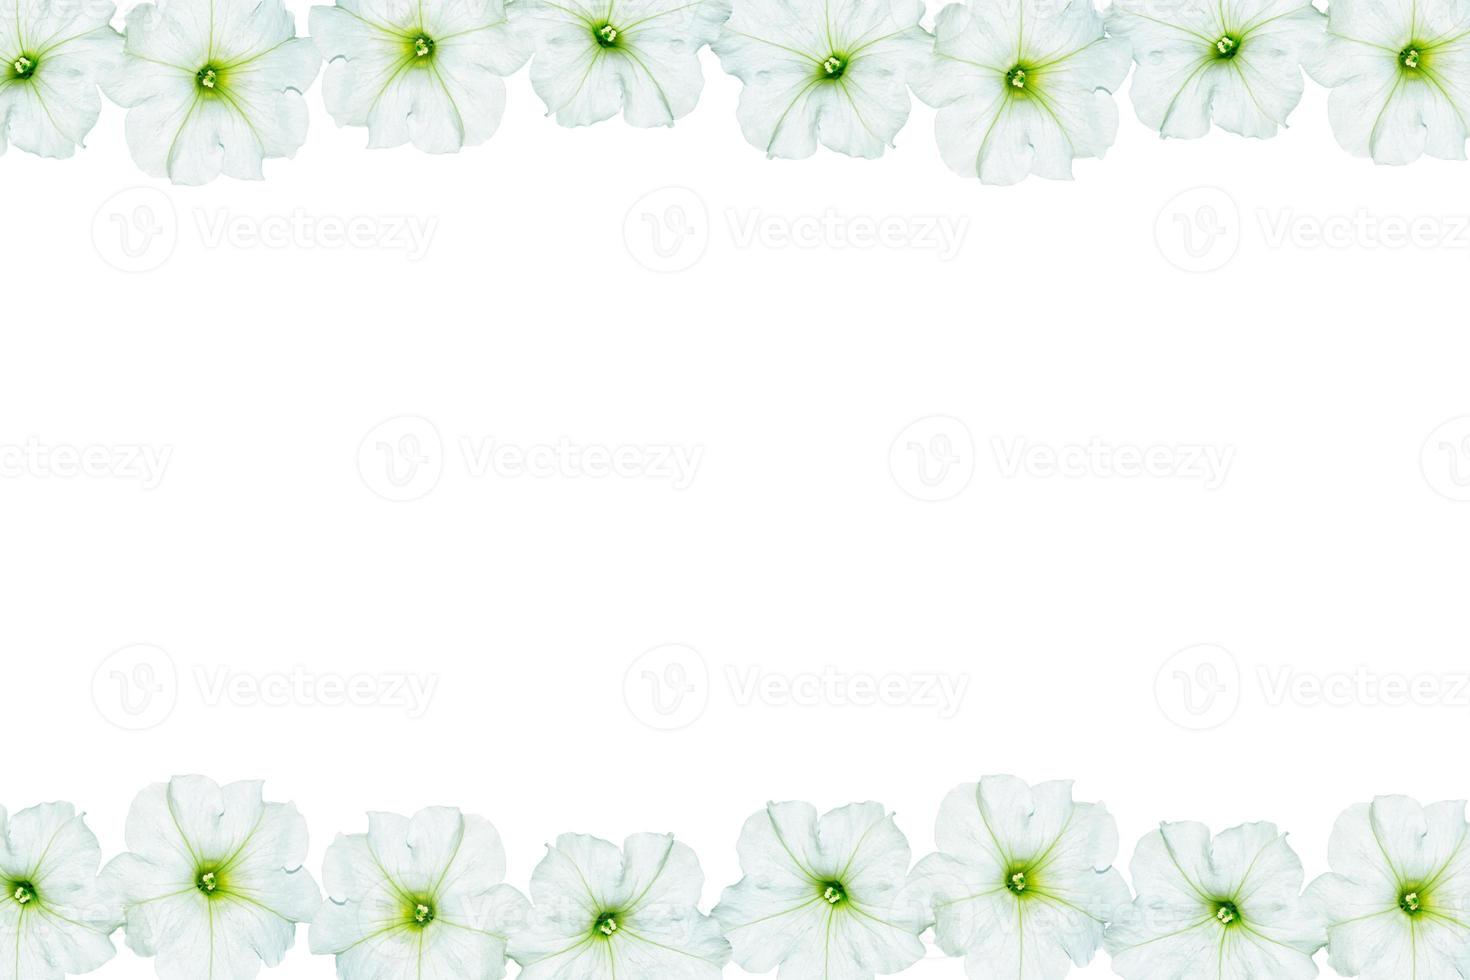 petunias aislado sobre un fondo blanco. Flores coloridas. foto